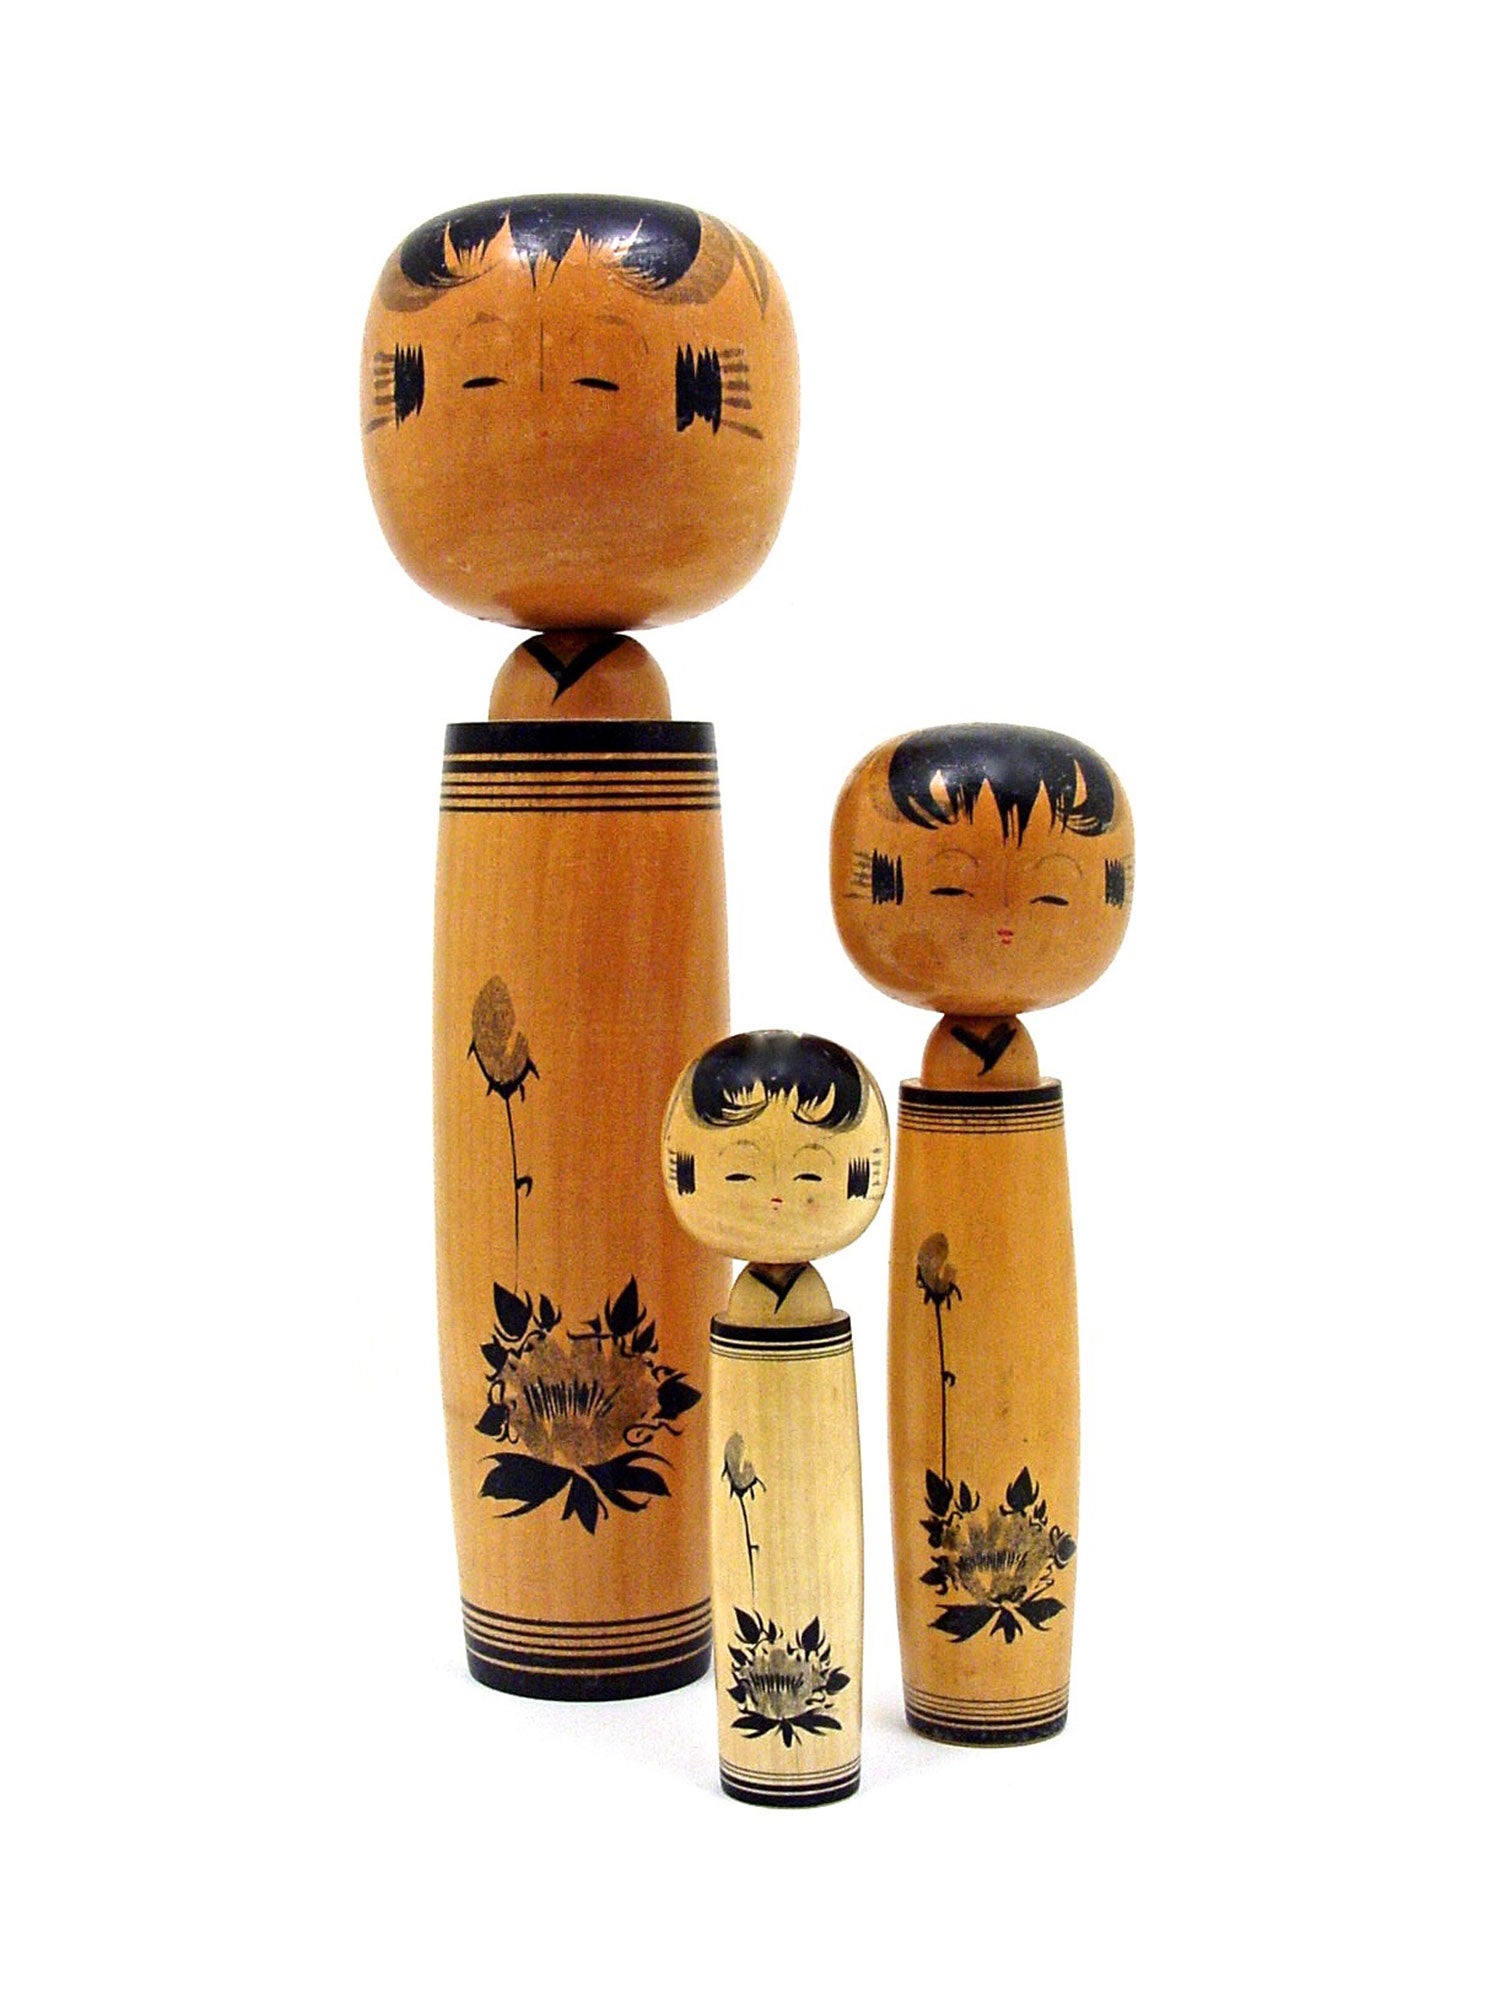 Artisan| Woodworker: Kanazawa, Tokushie